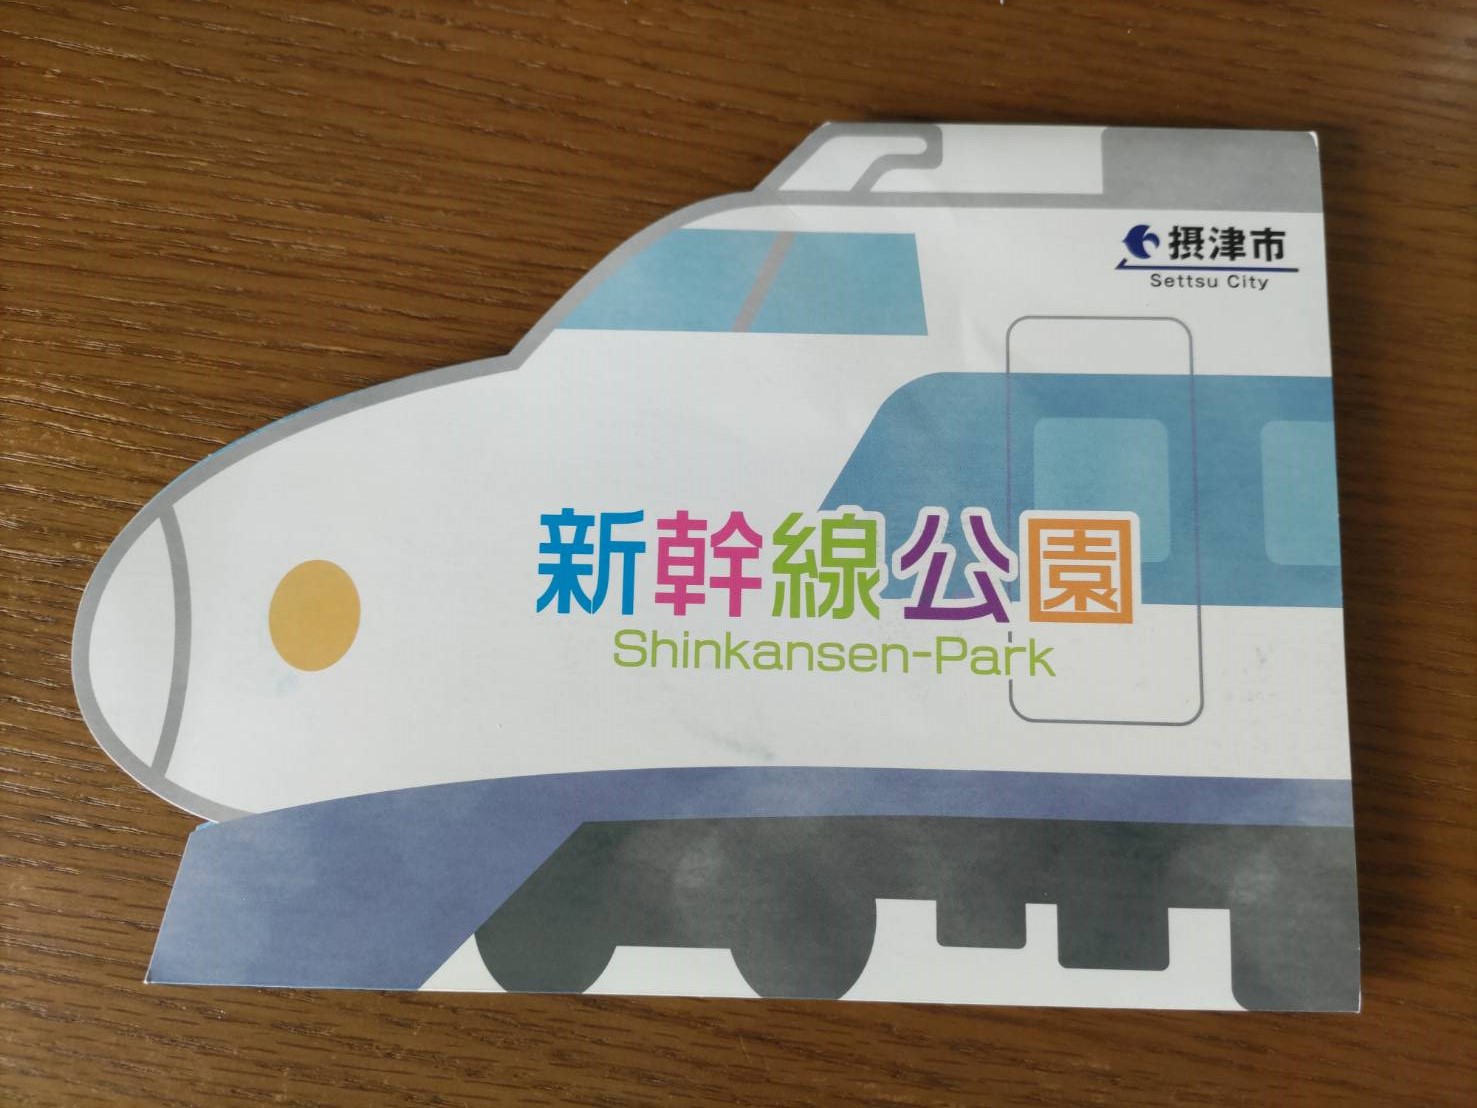 新幹線公園のチラシの表紙の写真